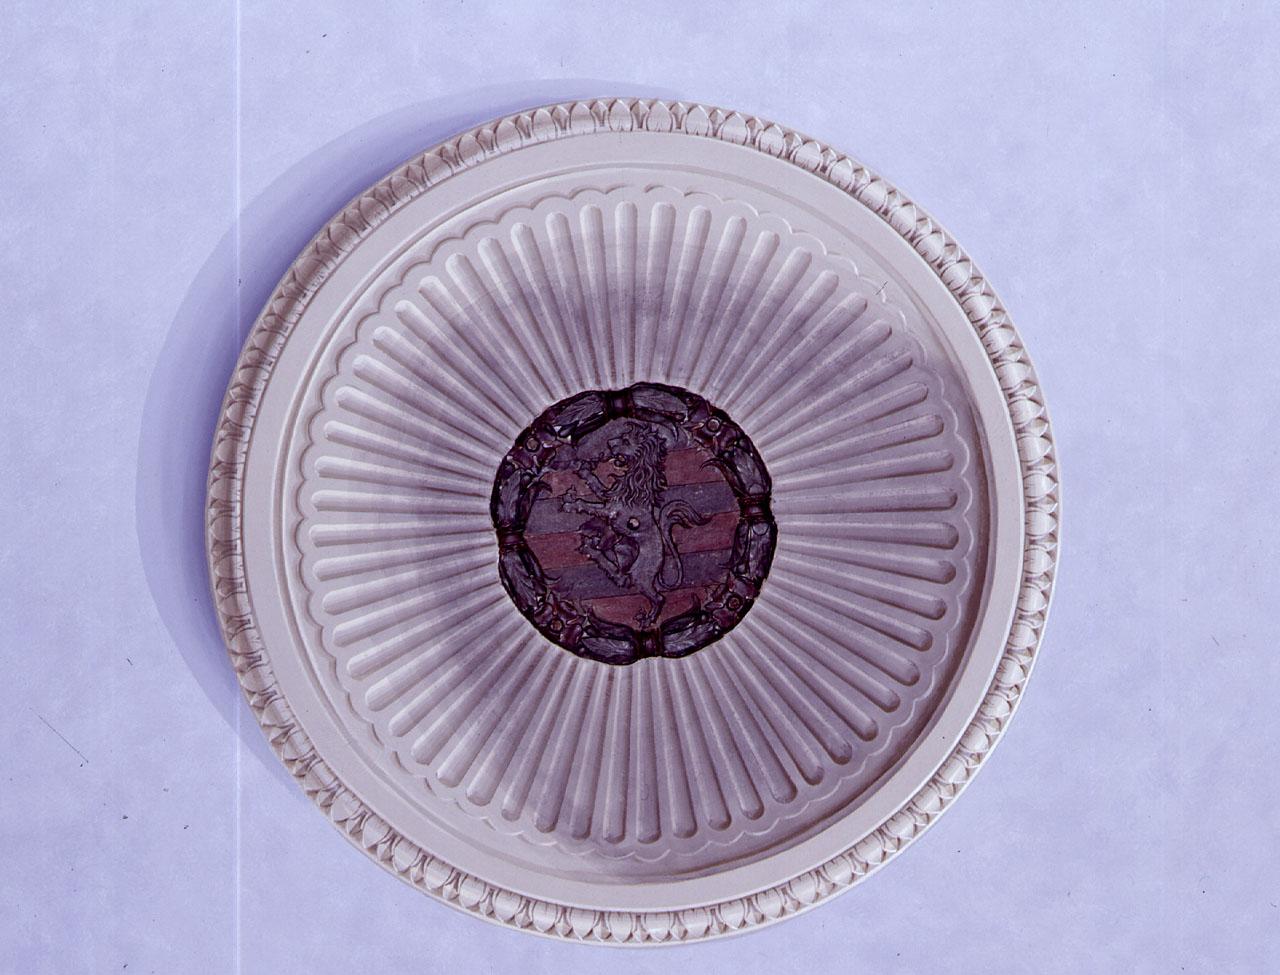 stemma gentilizio della famiglia Ricasoli (chiave di volta) - produzione fiorentina (sec. XV)